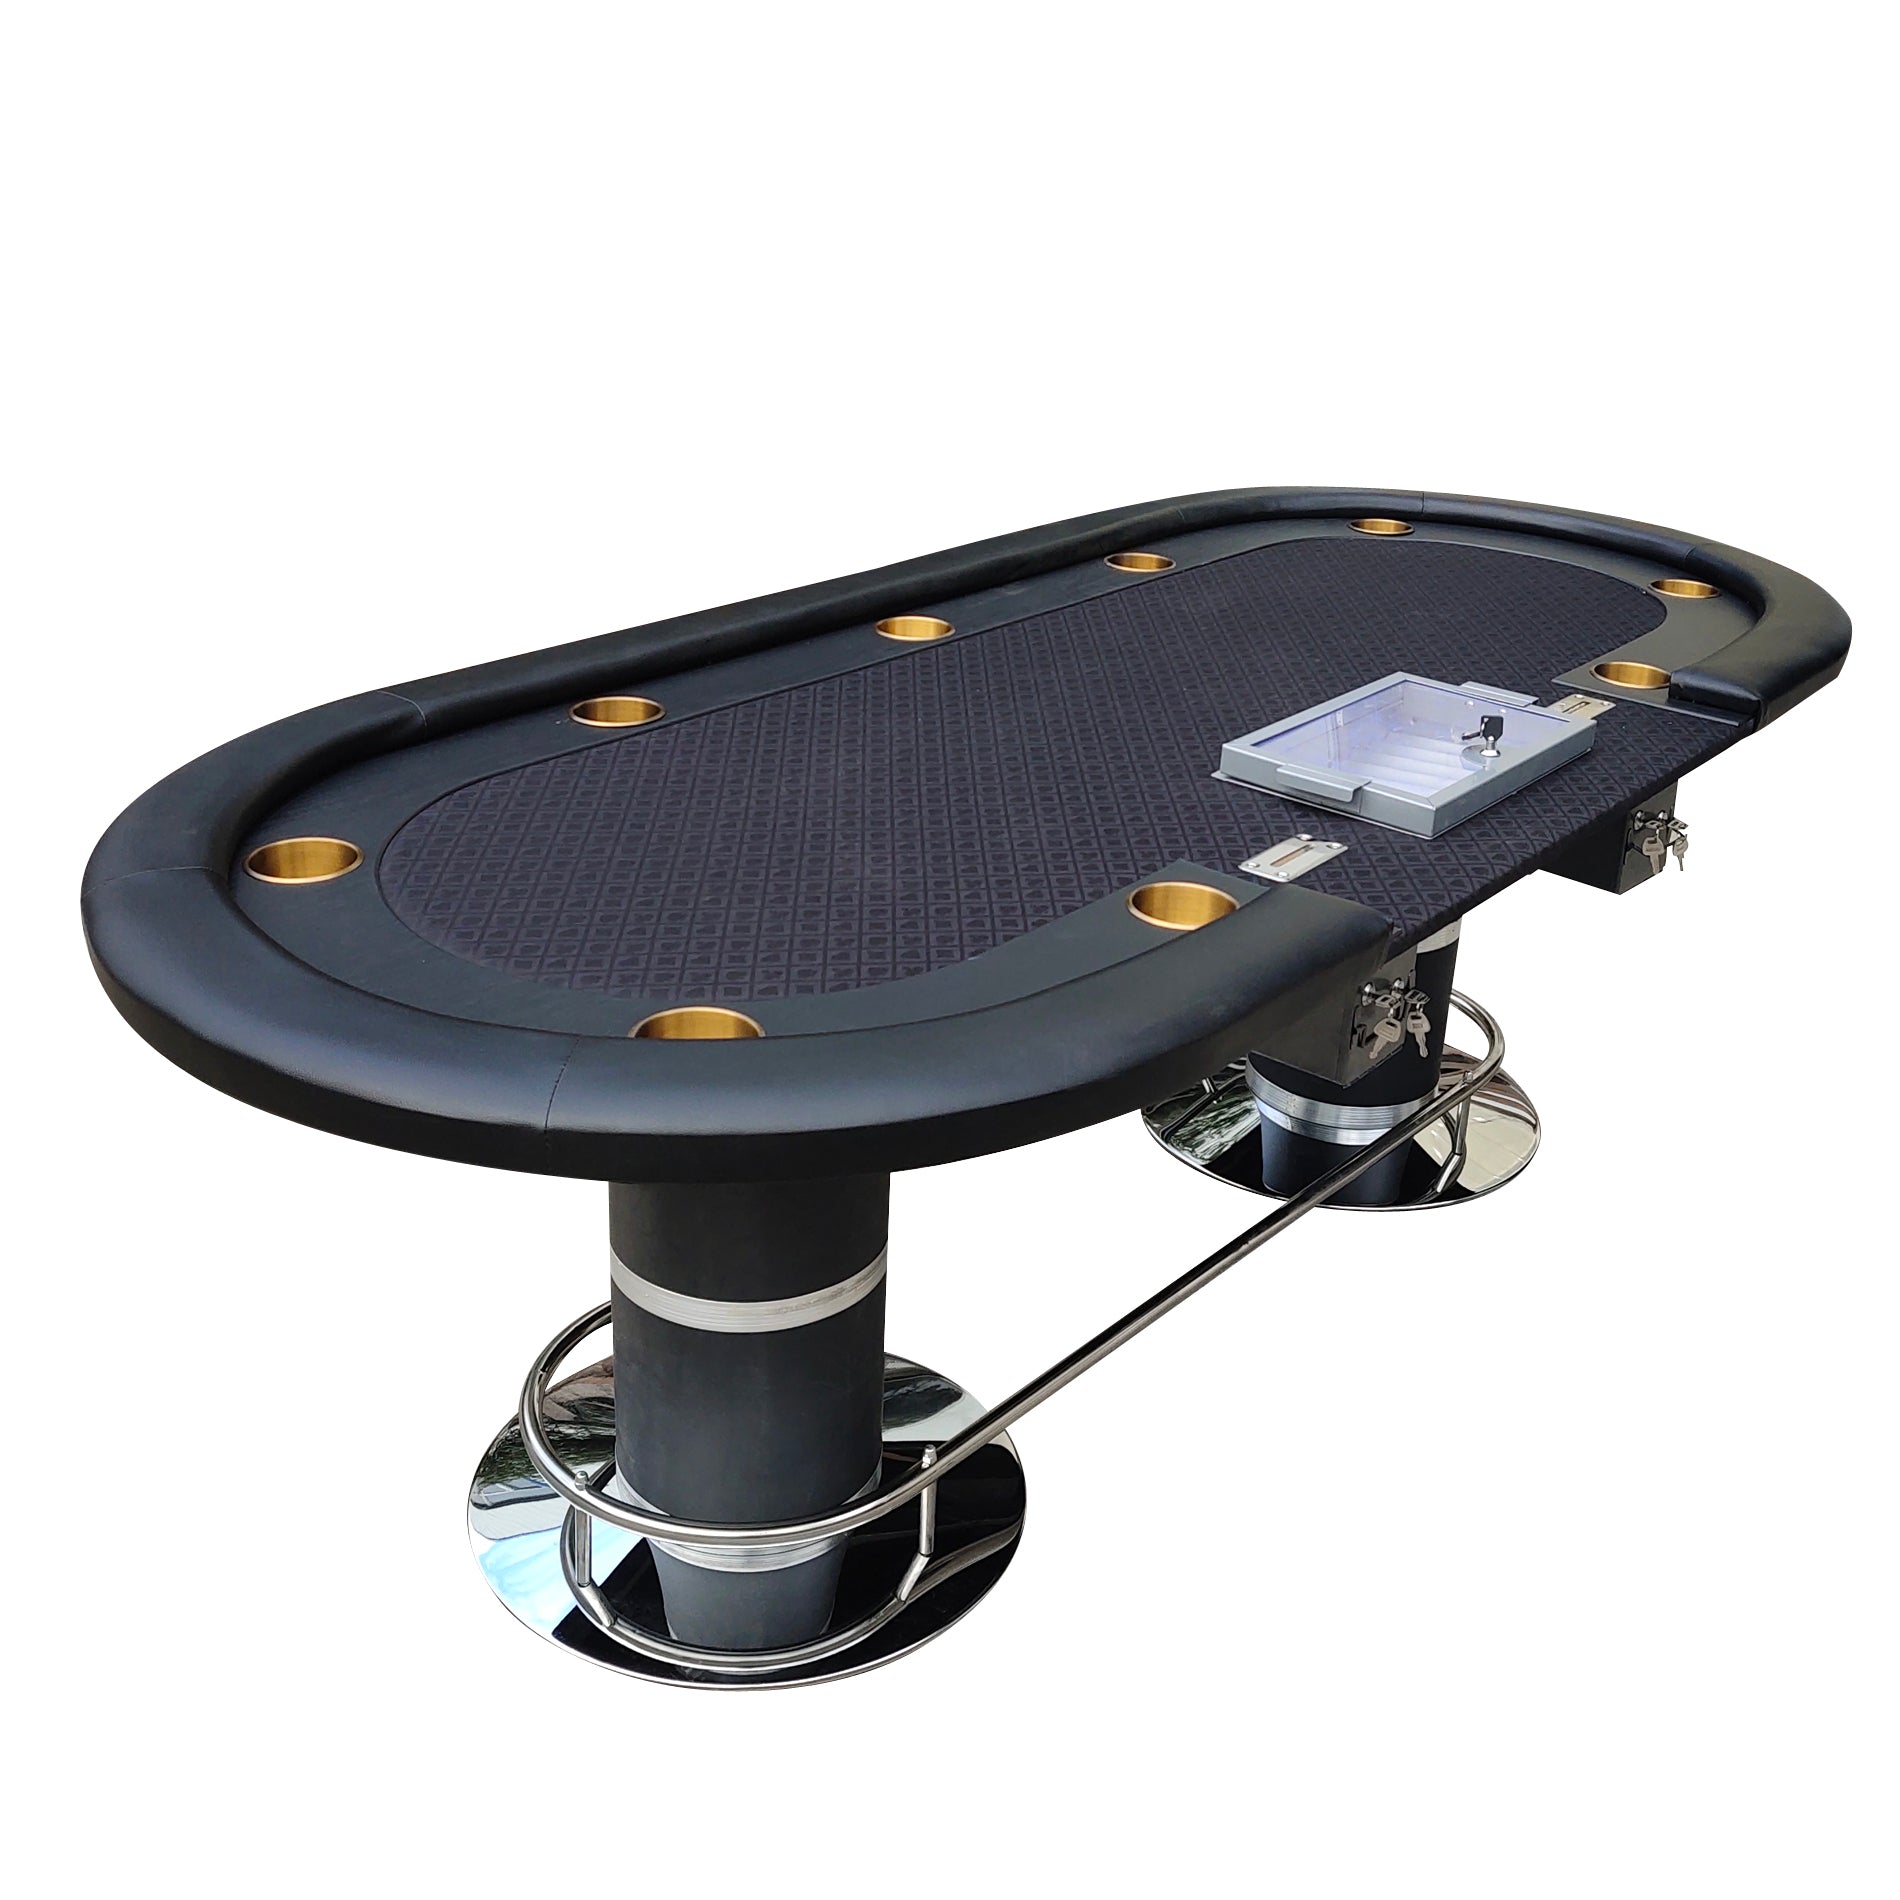 96" Oval Dark Knight Black Felt Poker Table black-stainless steel